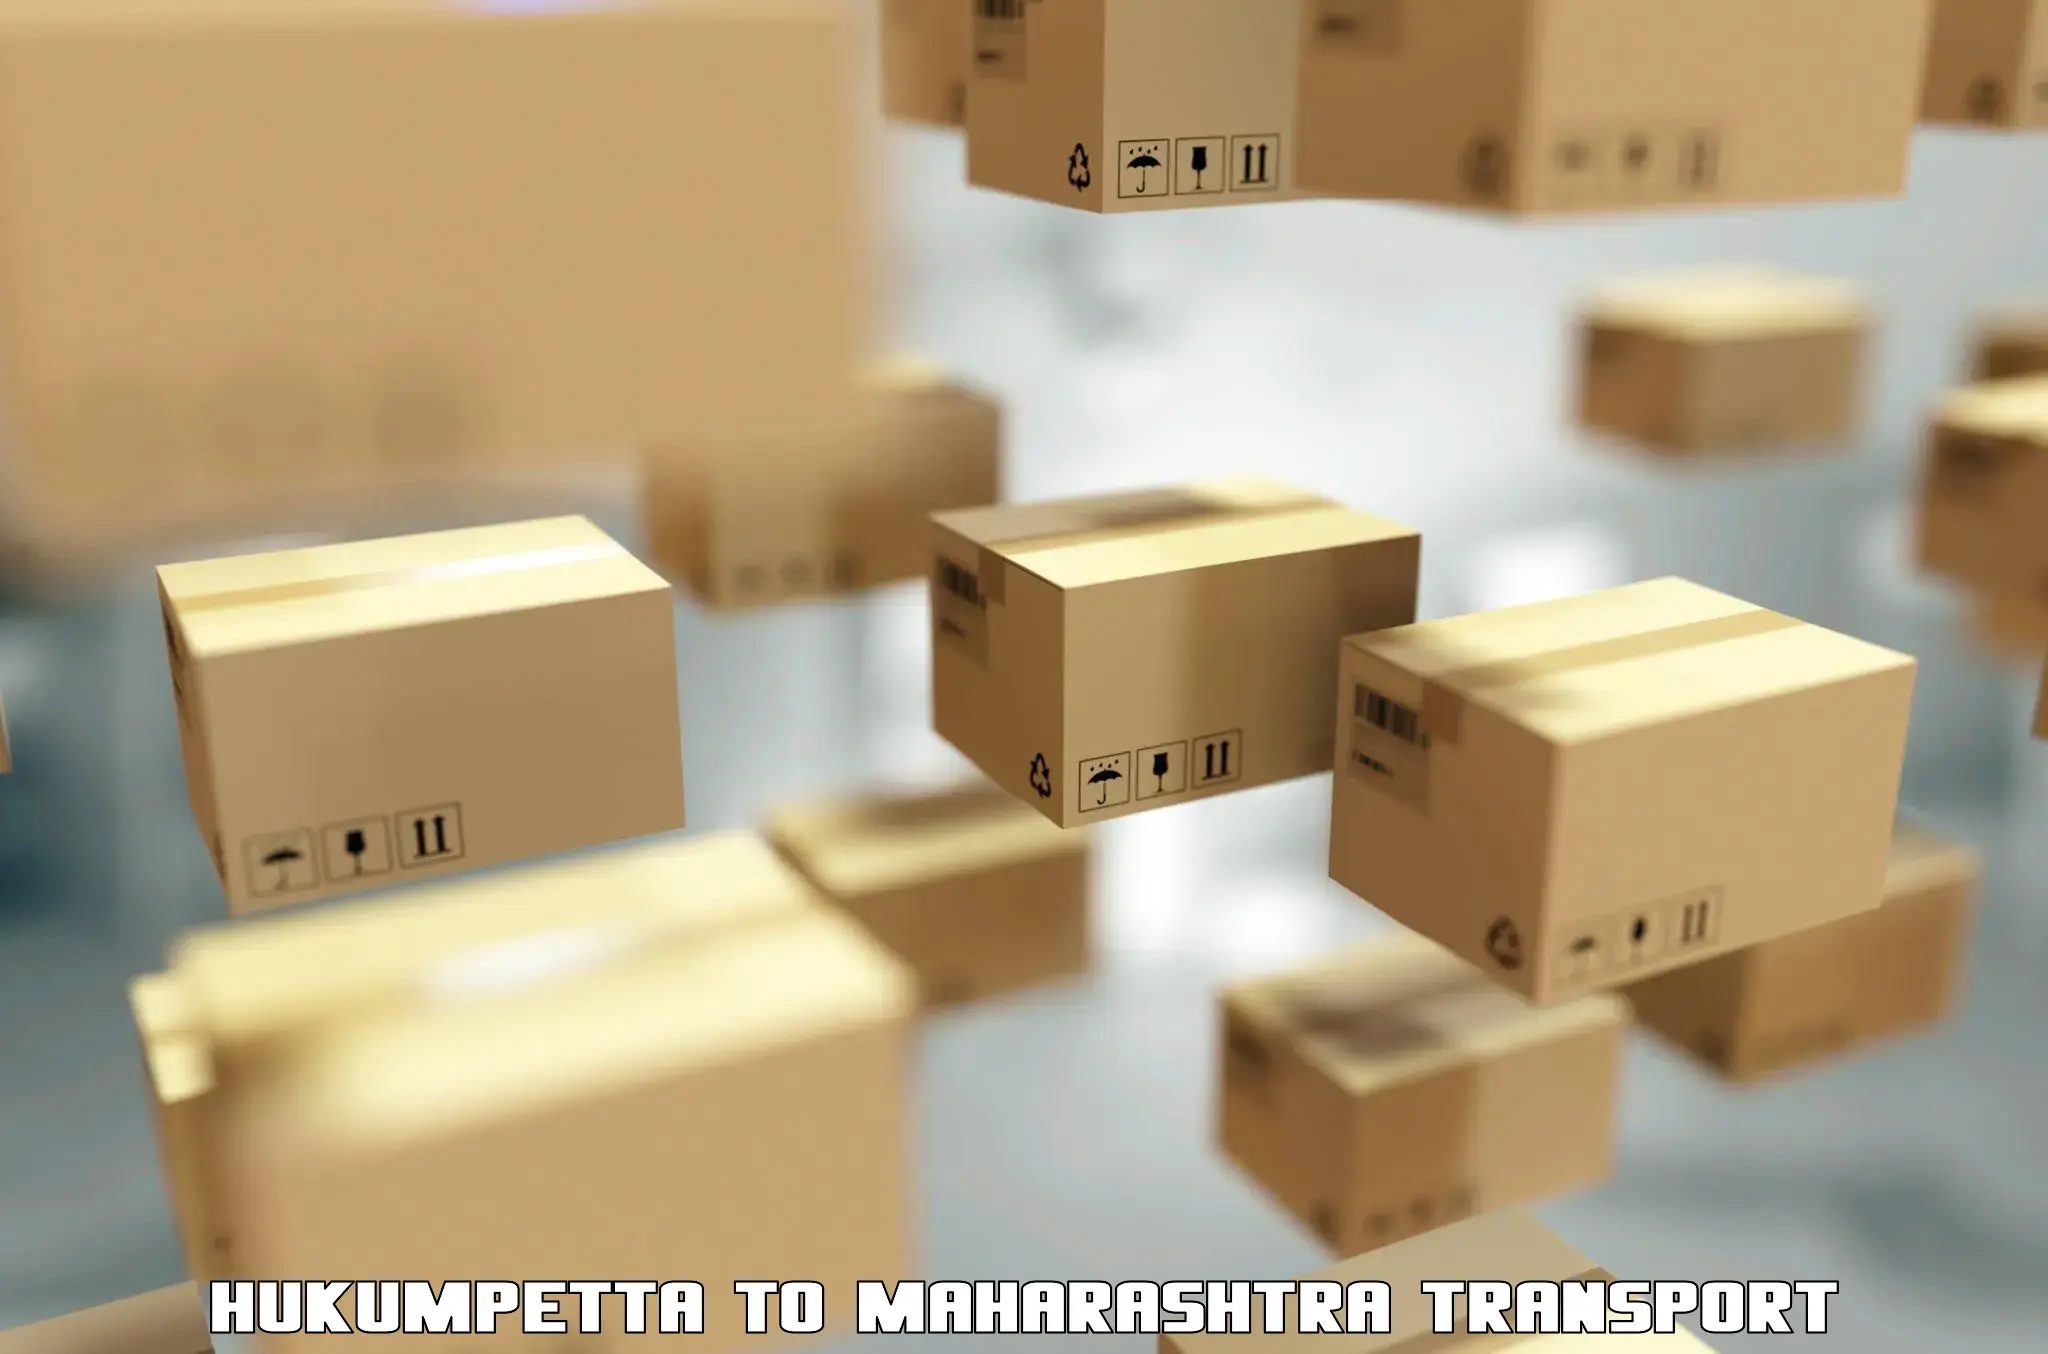 Shipping partner Hukumpetta to Maharashtra